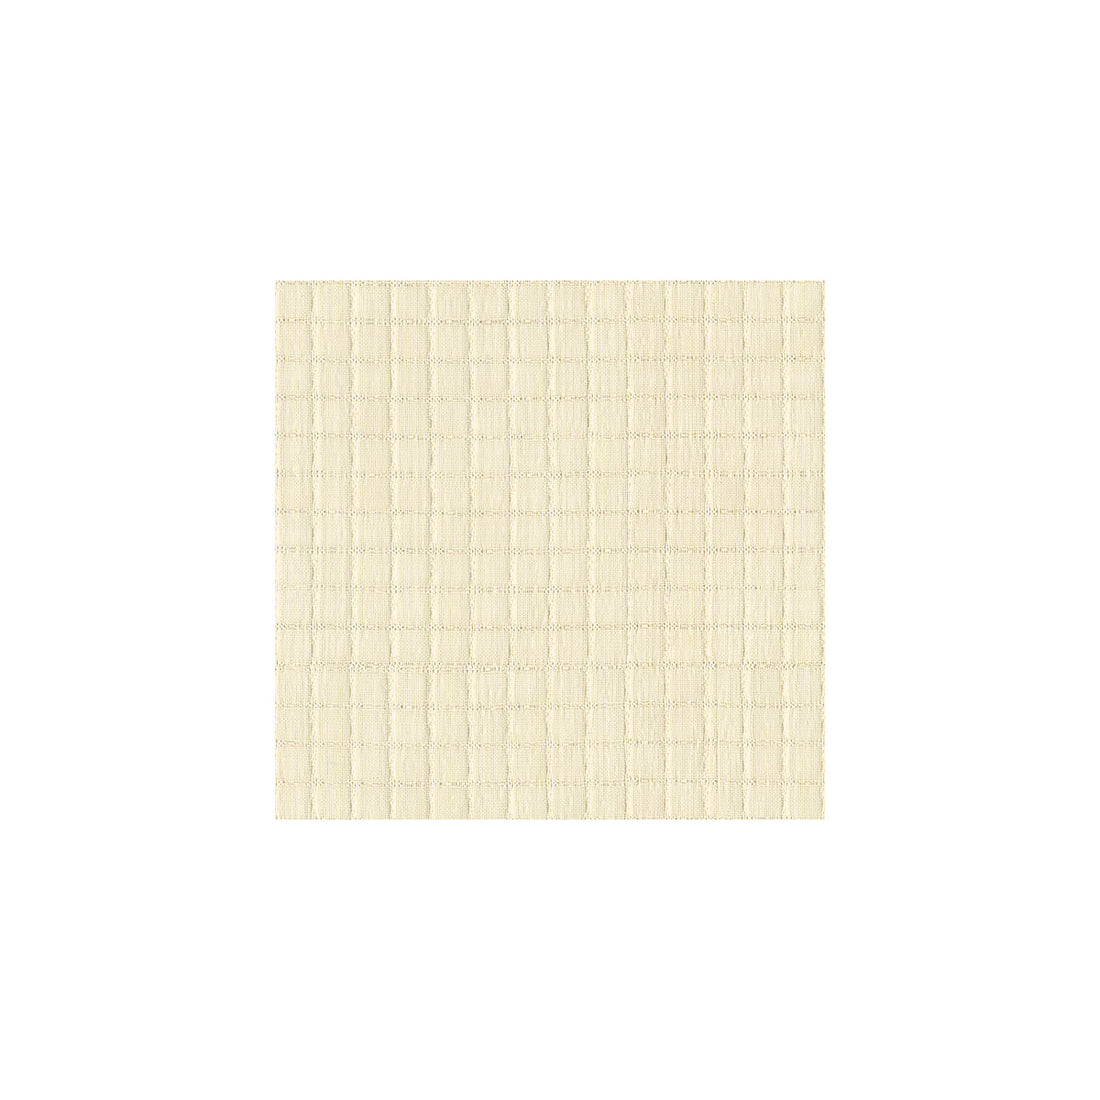 Kravet Basics fabric in 3747-111 color - pattern 3747.111.0 - by Kravet Basics